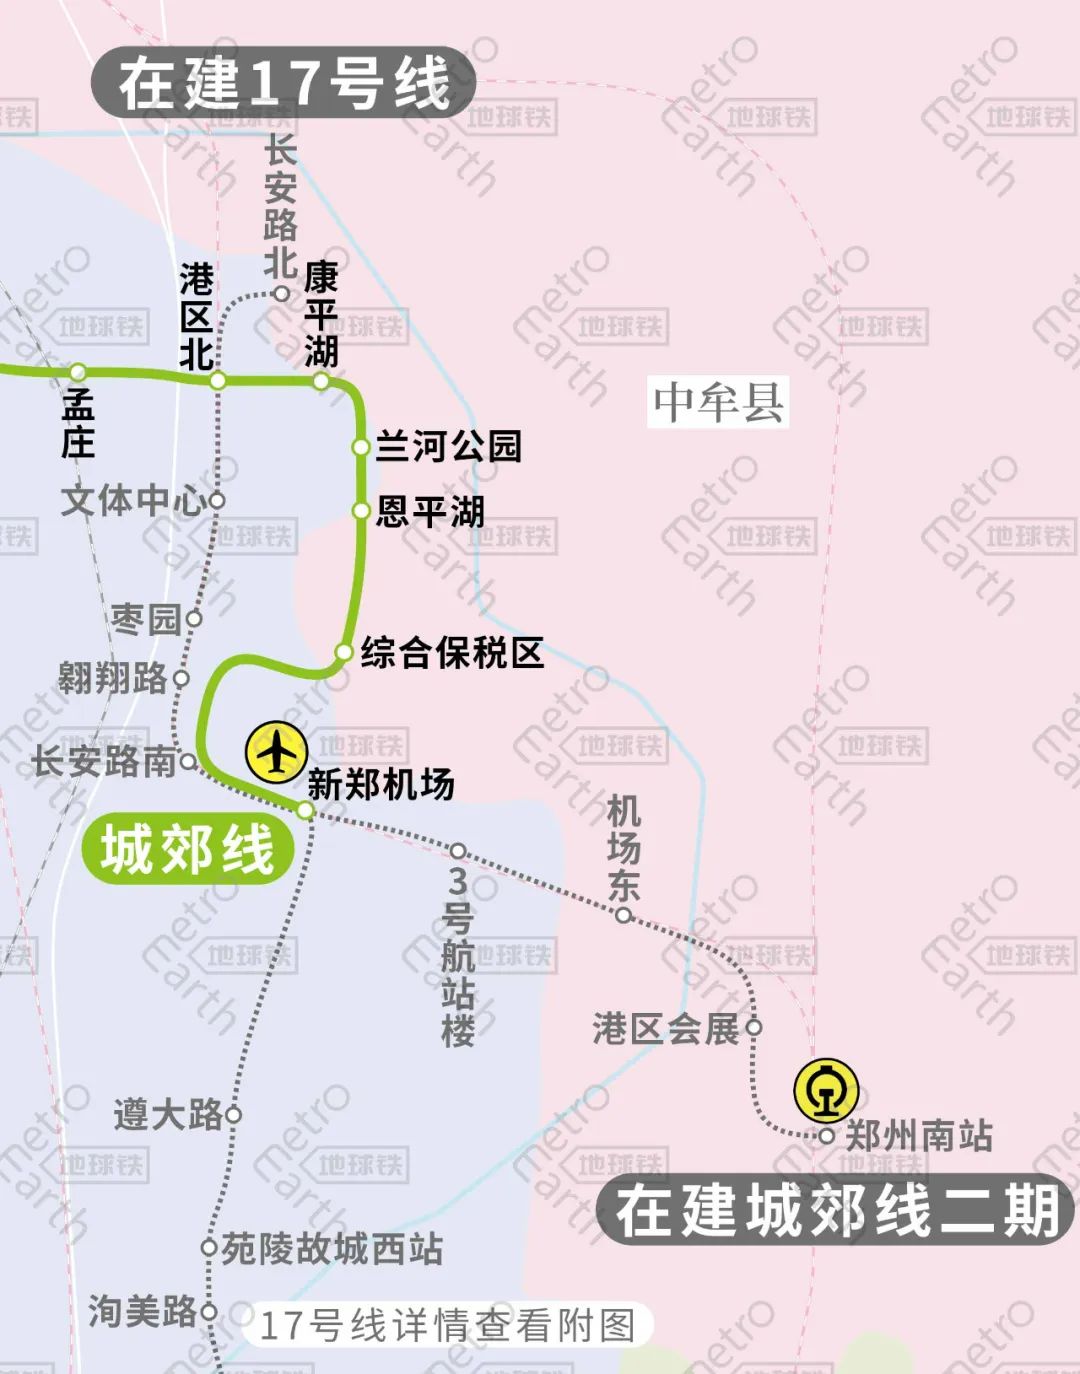 郑州地铁线路图_3号线地铁郑州线路图_地铁郑州线路图最新